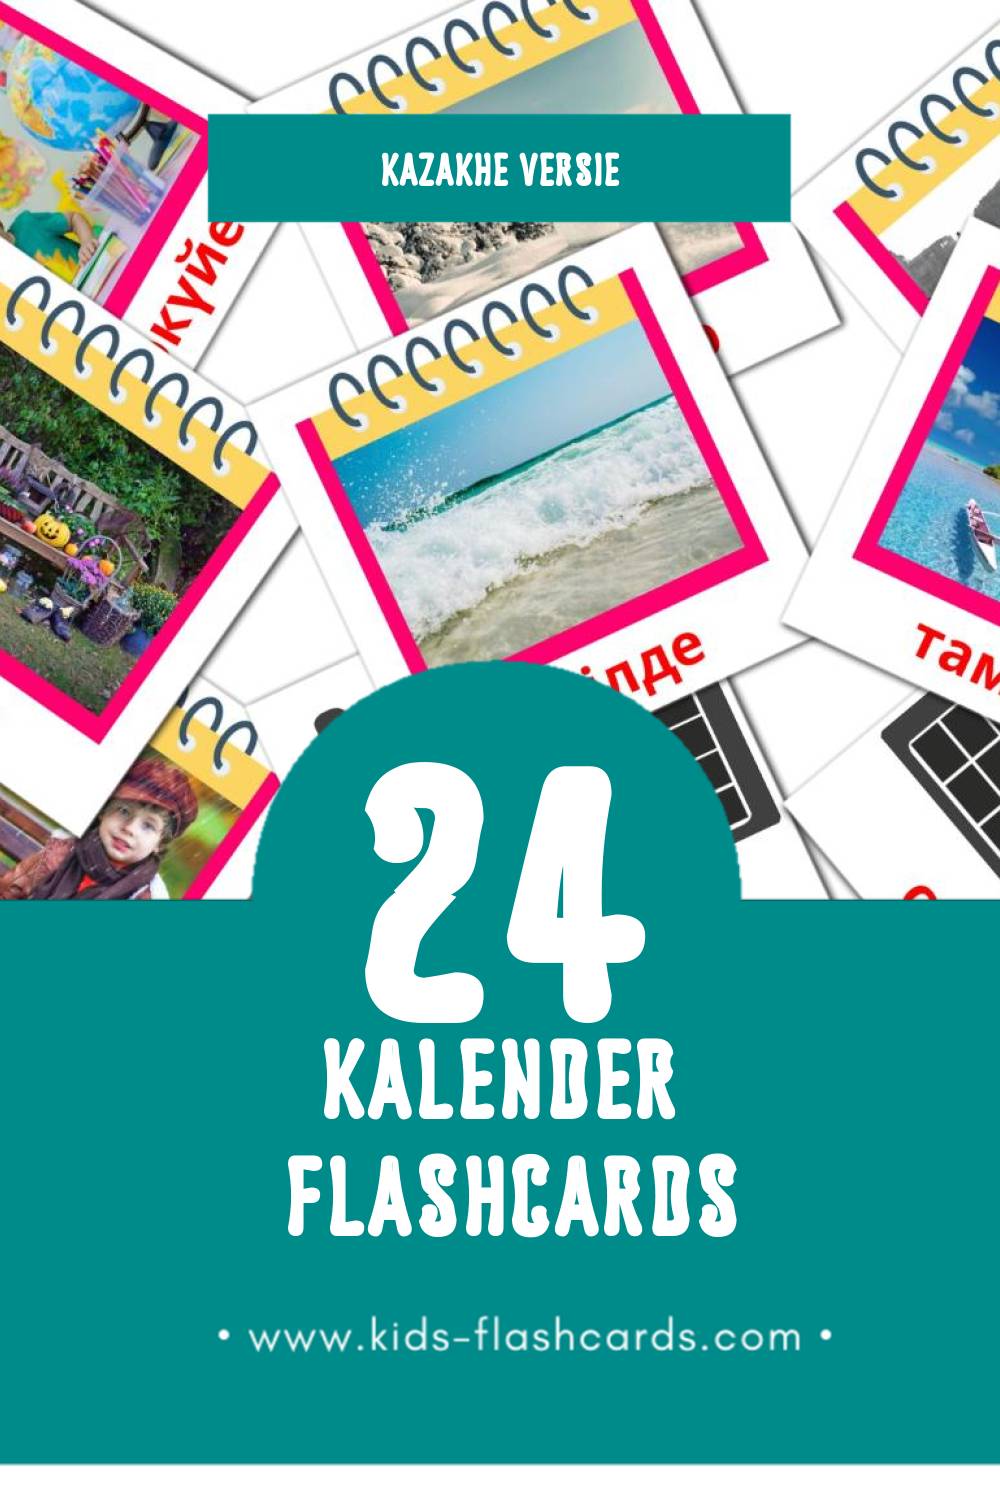 Visuele Күнтізбе Flashcards voor Kleuters (24 kaarten in het Kazakh)